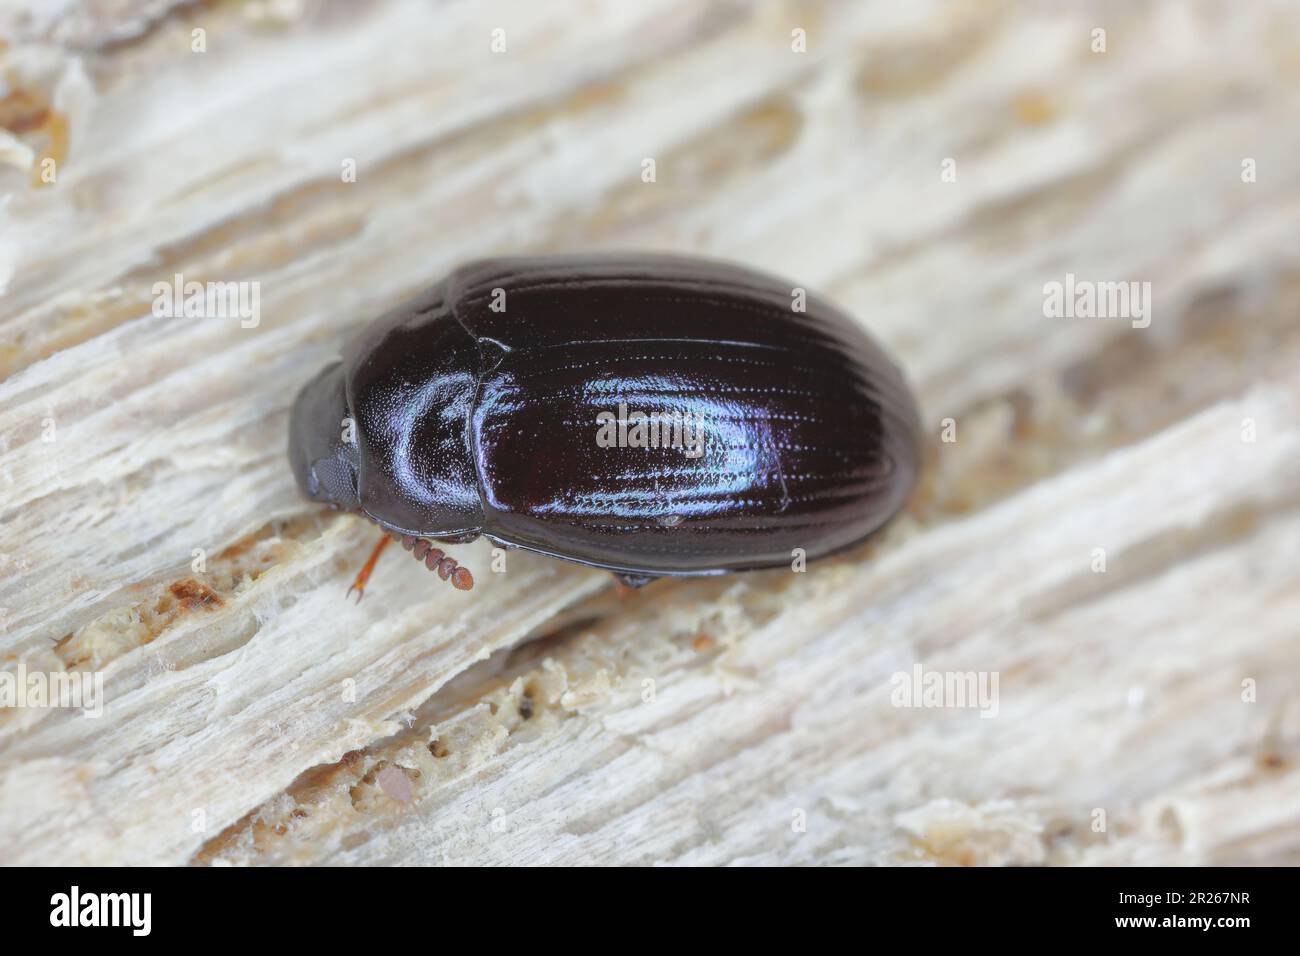 Platydema violaceum, Dunkelkäfer (Tenebionidae). Ein Insekt, das unter der Rinde eines toten Baumes gefunden wurde. Stockfoto